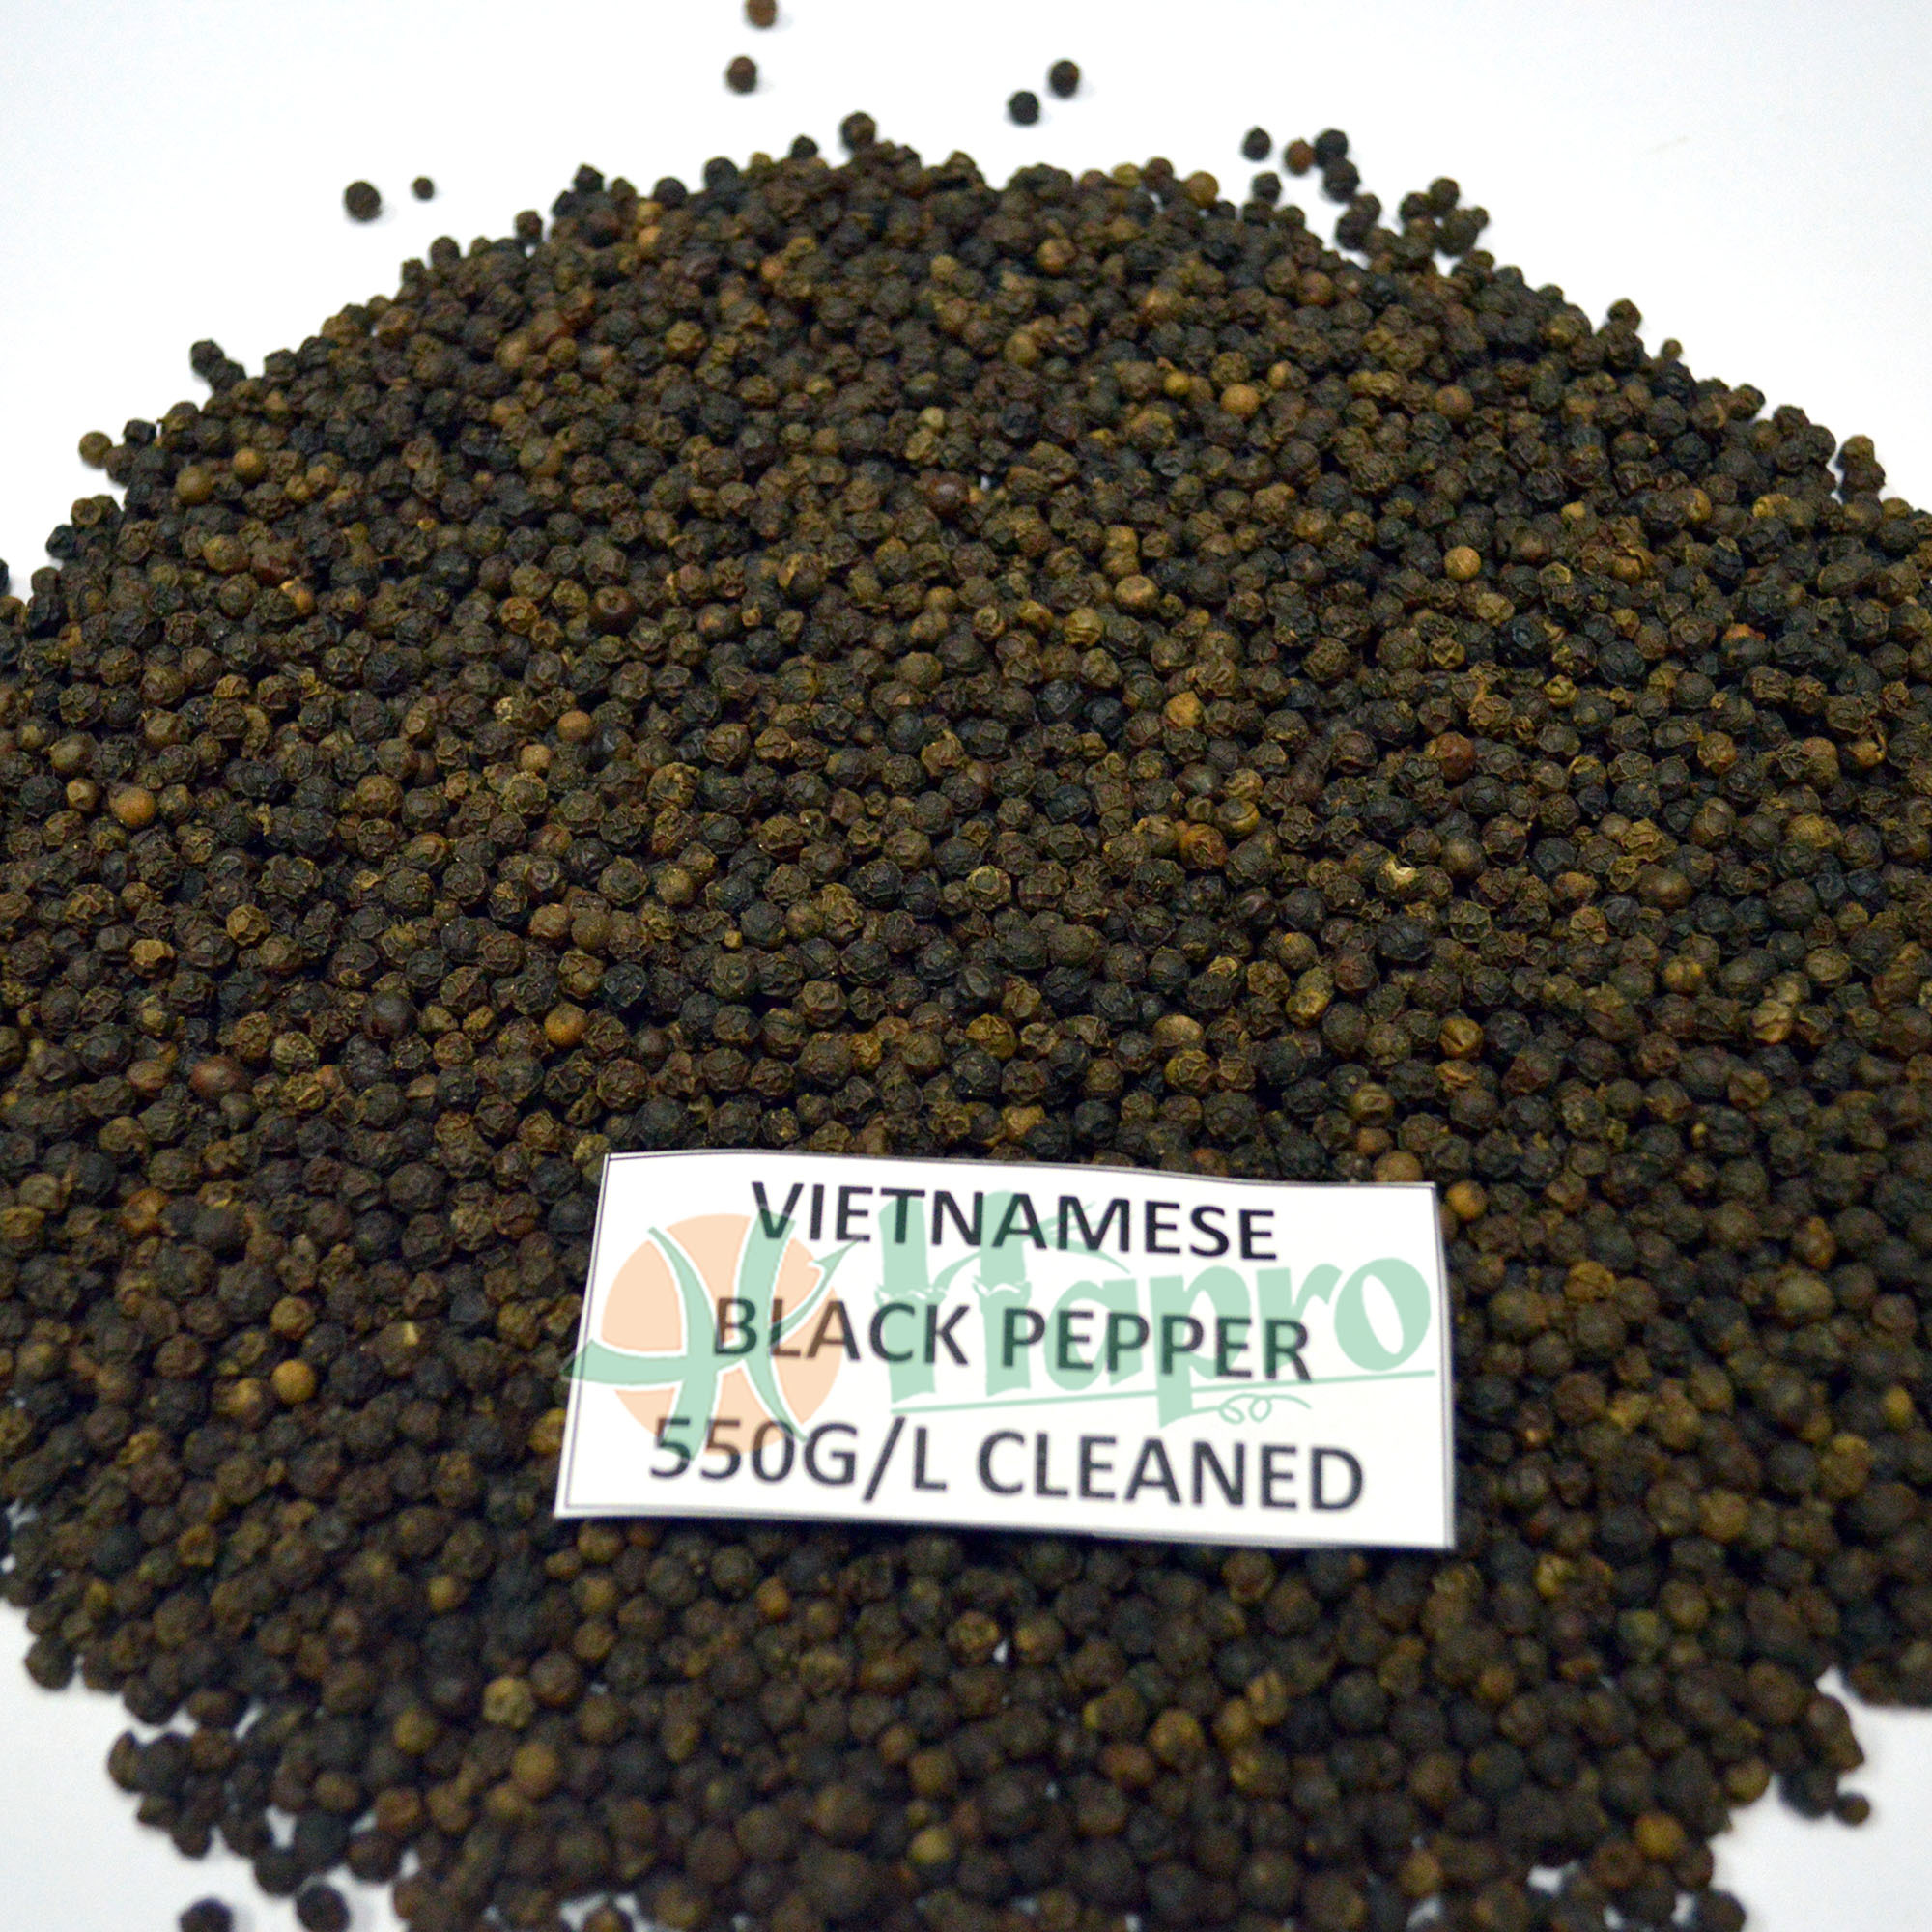 Vietnamese Black Pepper Cleaned